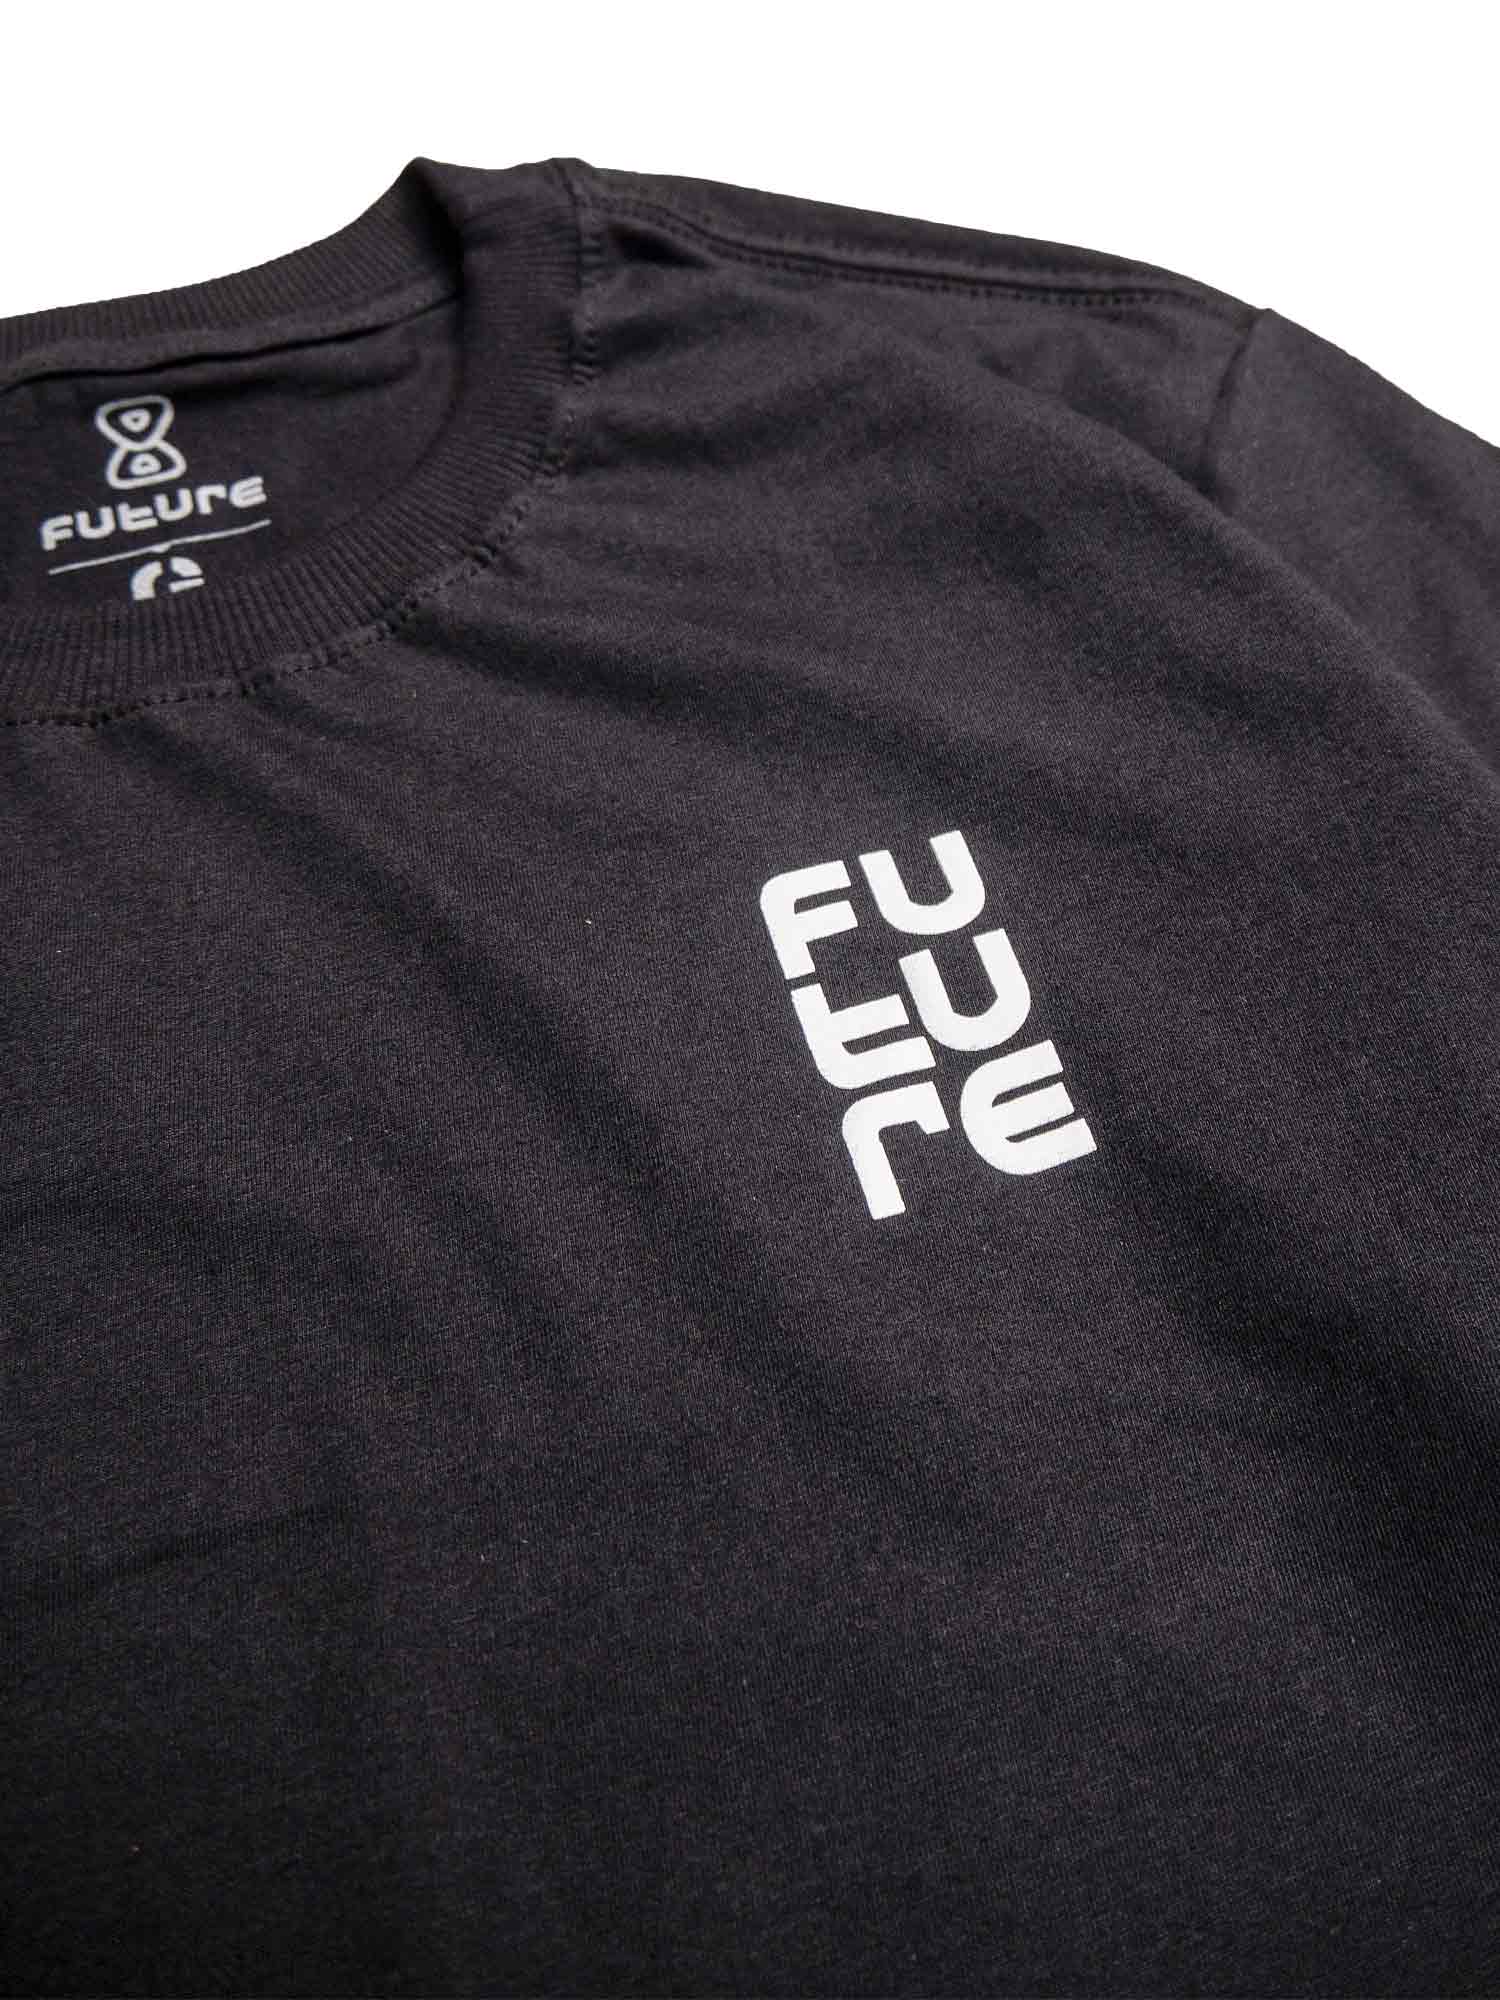 Camiseta-Future-Texturized-Preta-Frente-Close